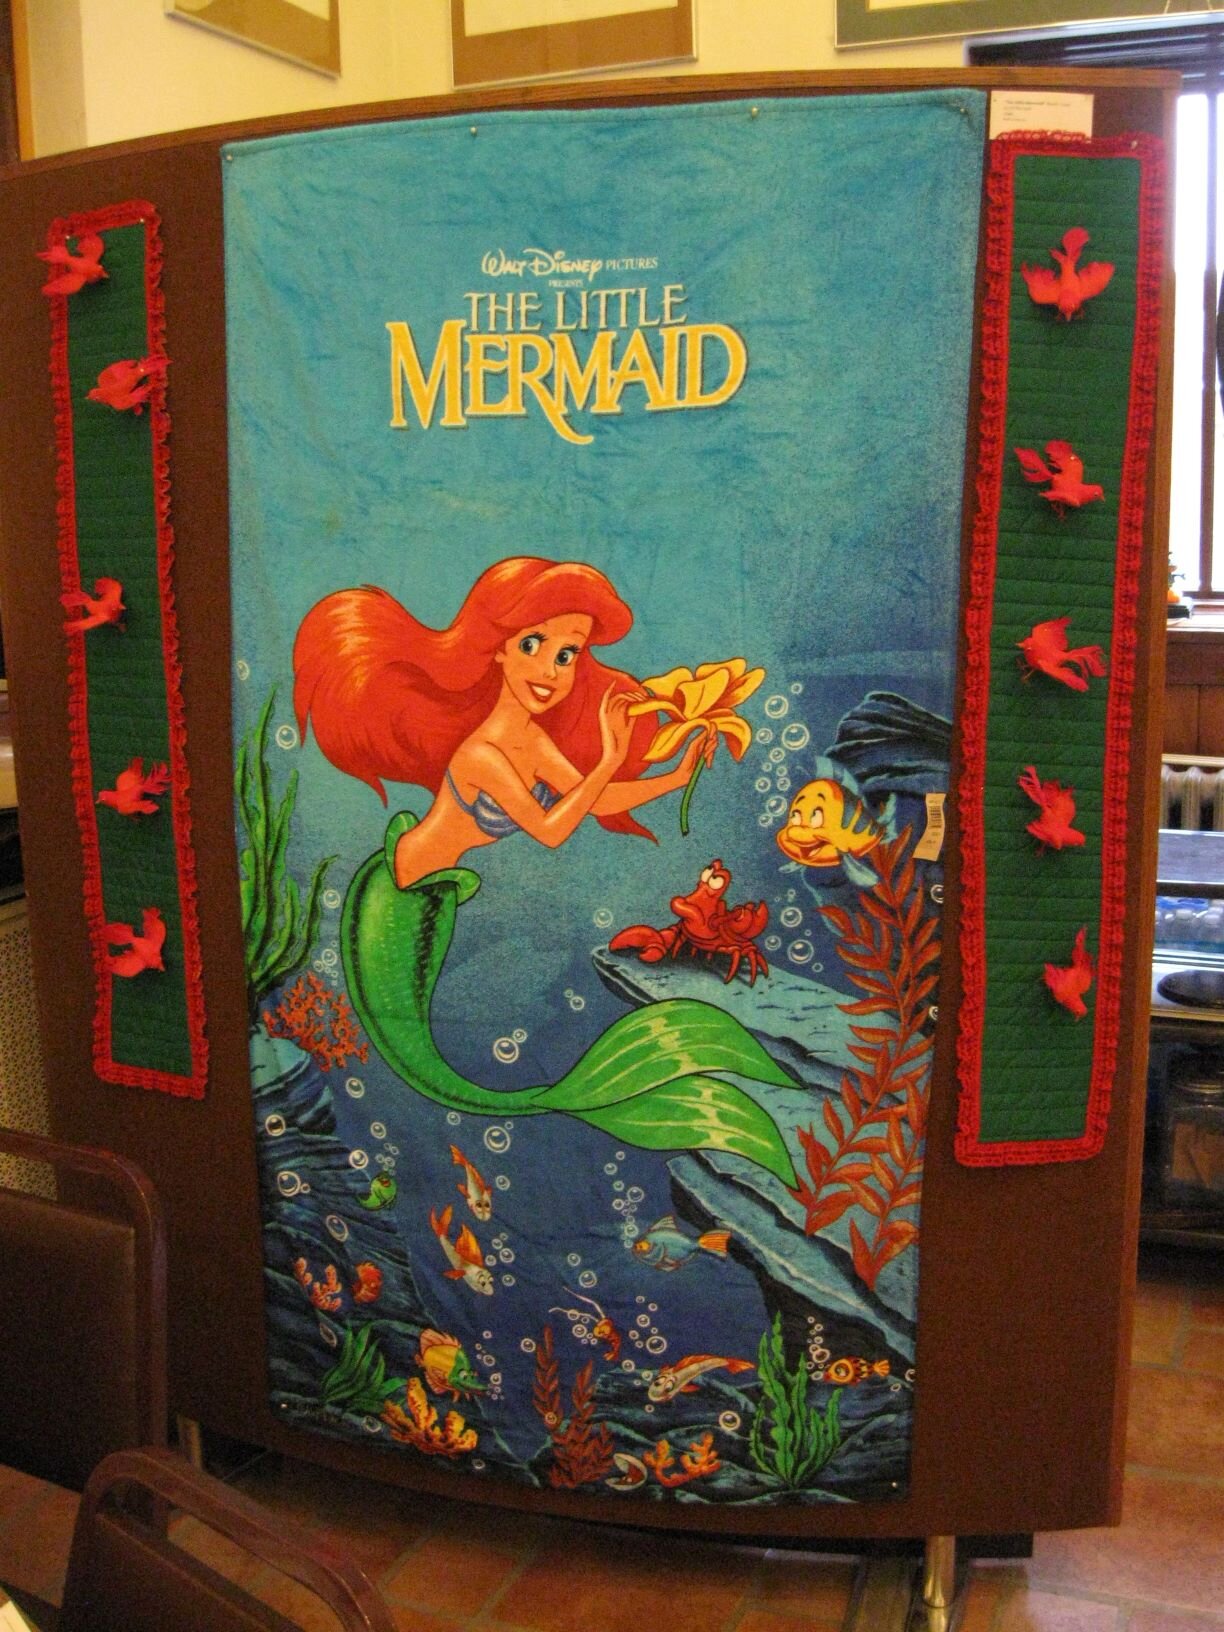 Disney’s Little Mermaid beach towel, design by Bill Morrison